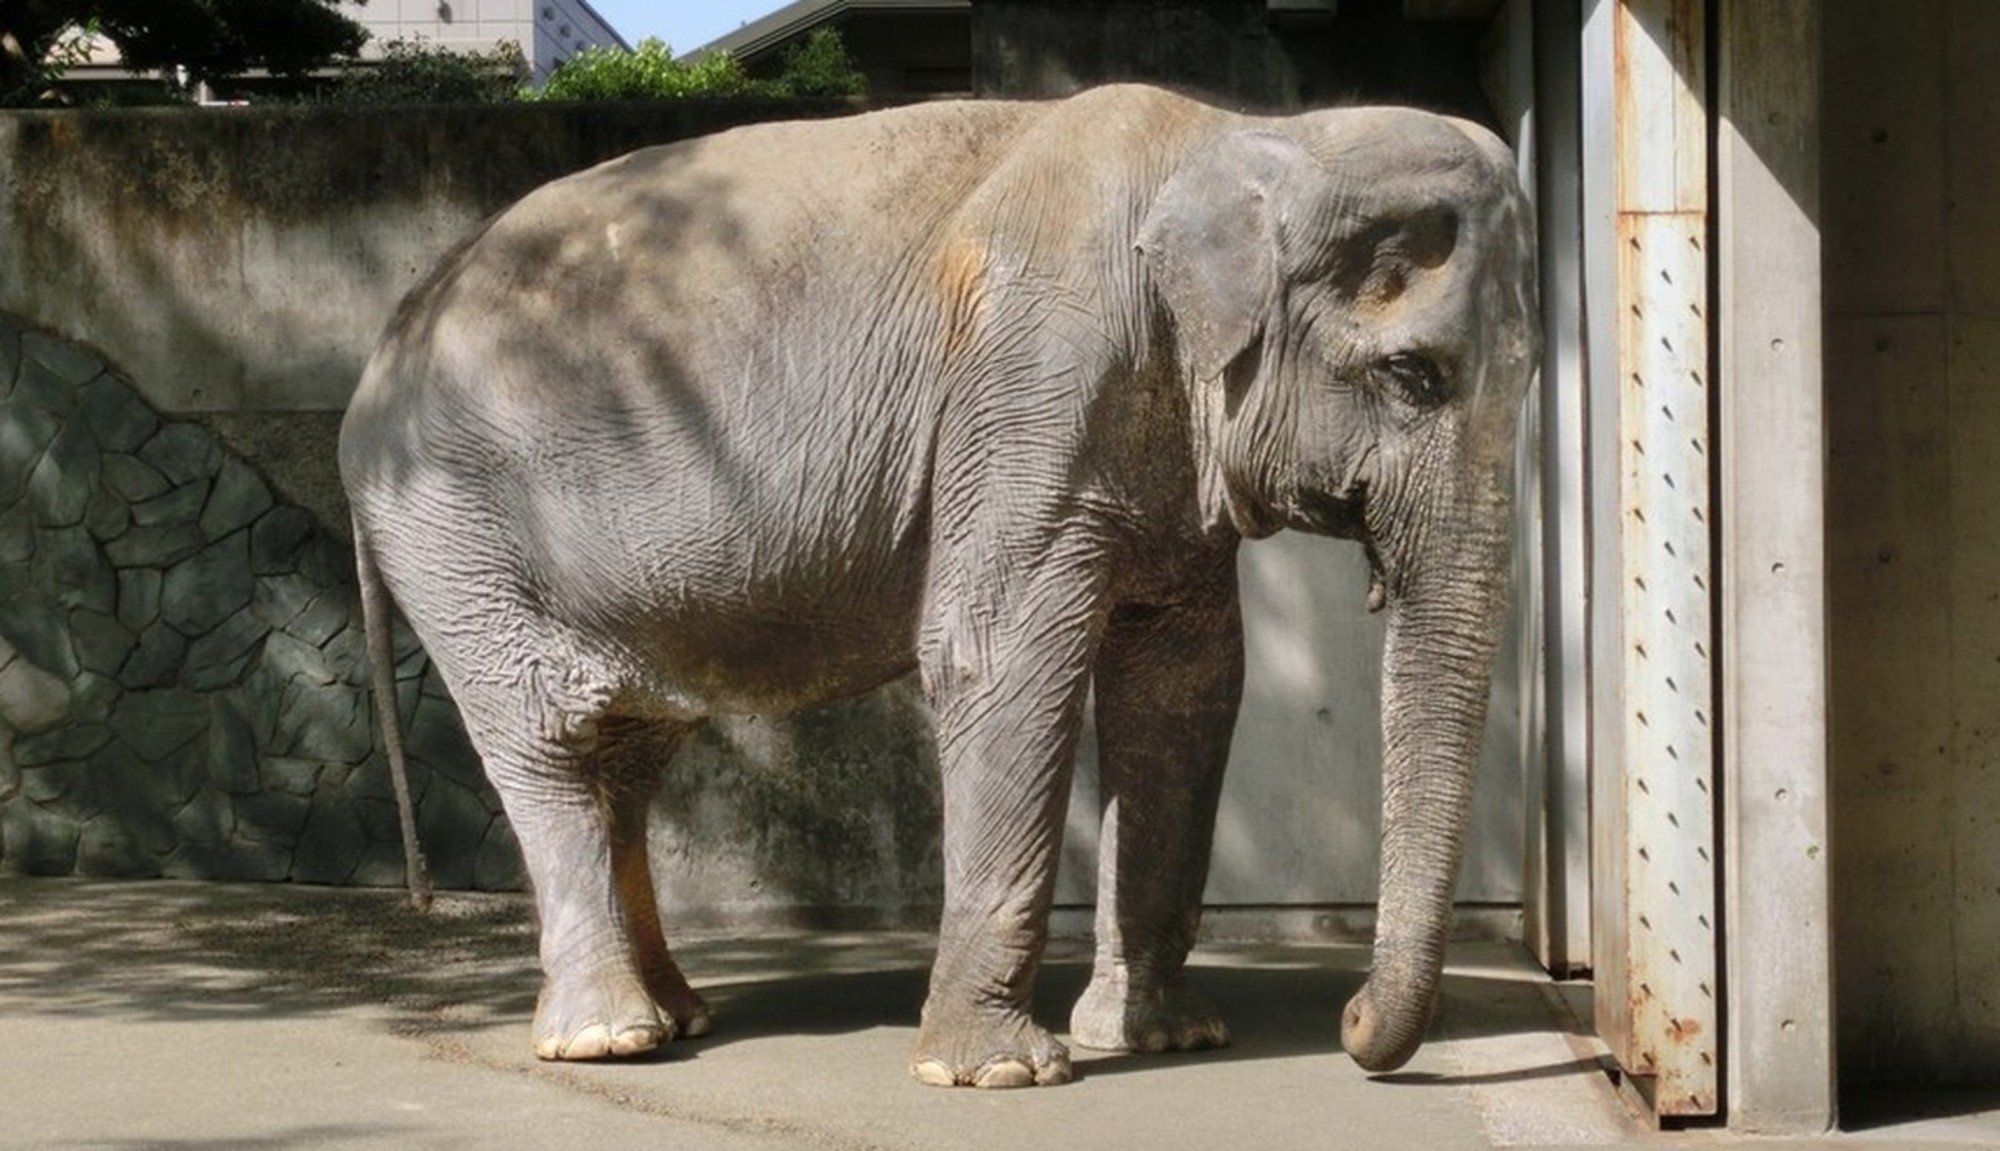 A elefante mais triste do mundo morreu, depois de 60 anos sozinha numa cela